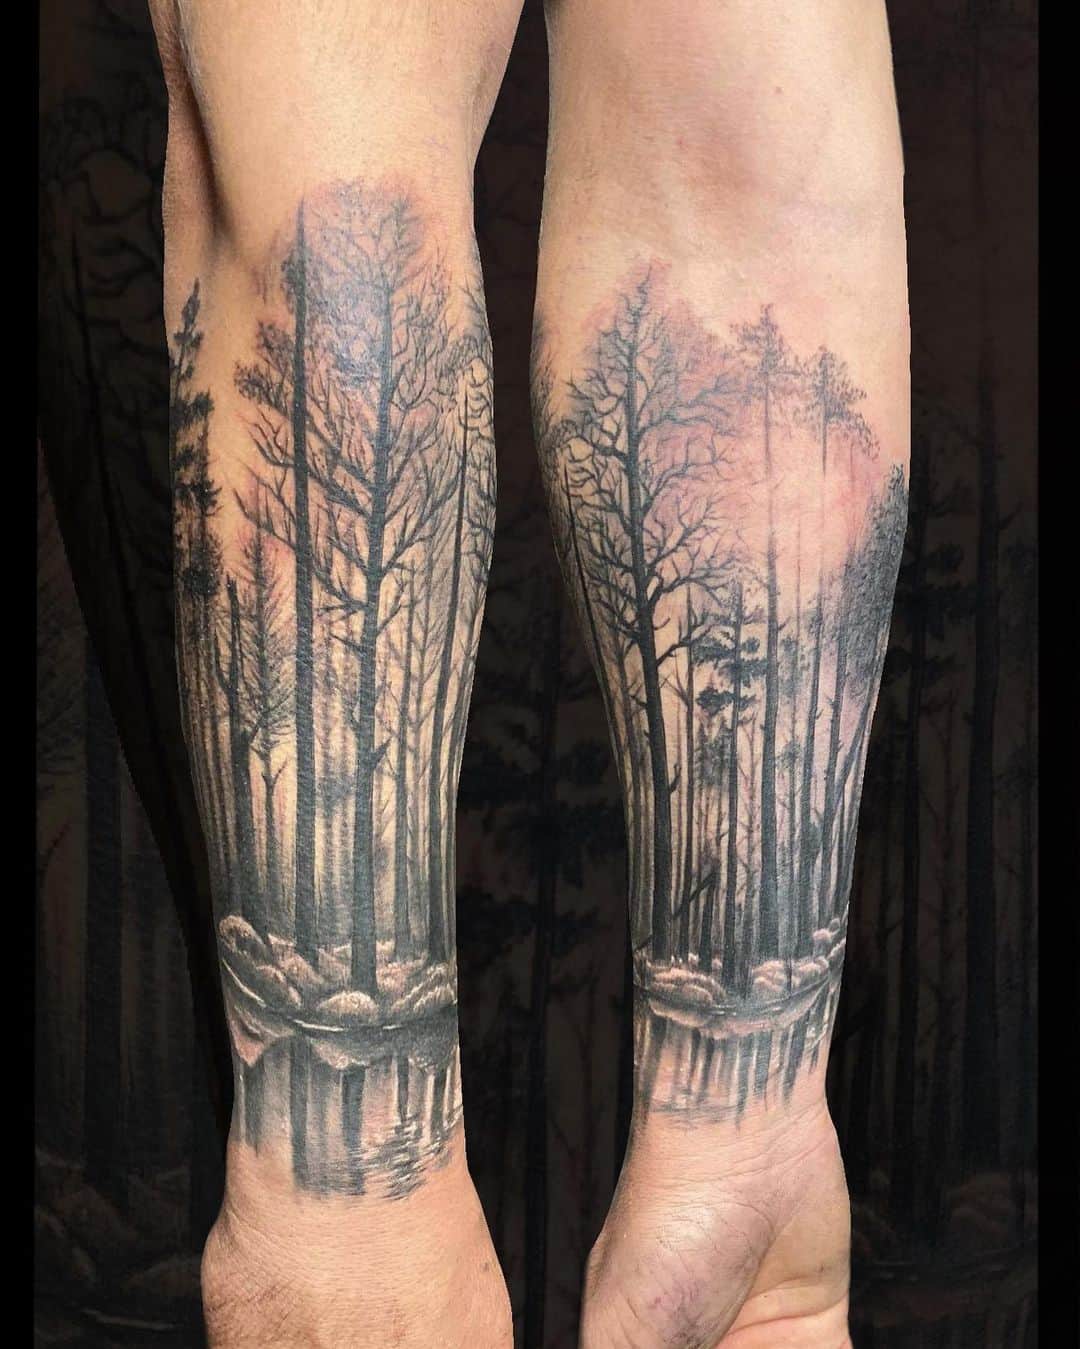 Preguntas frecuentes sobre el tatuaje del bosque